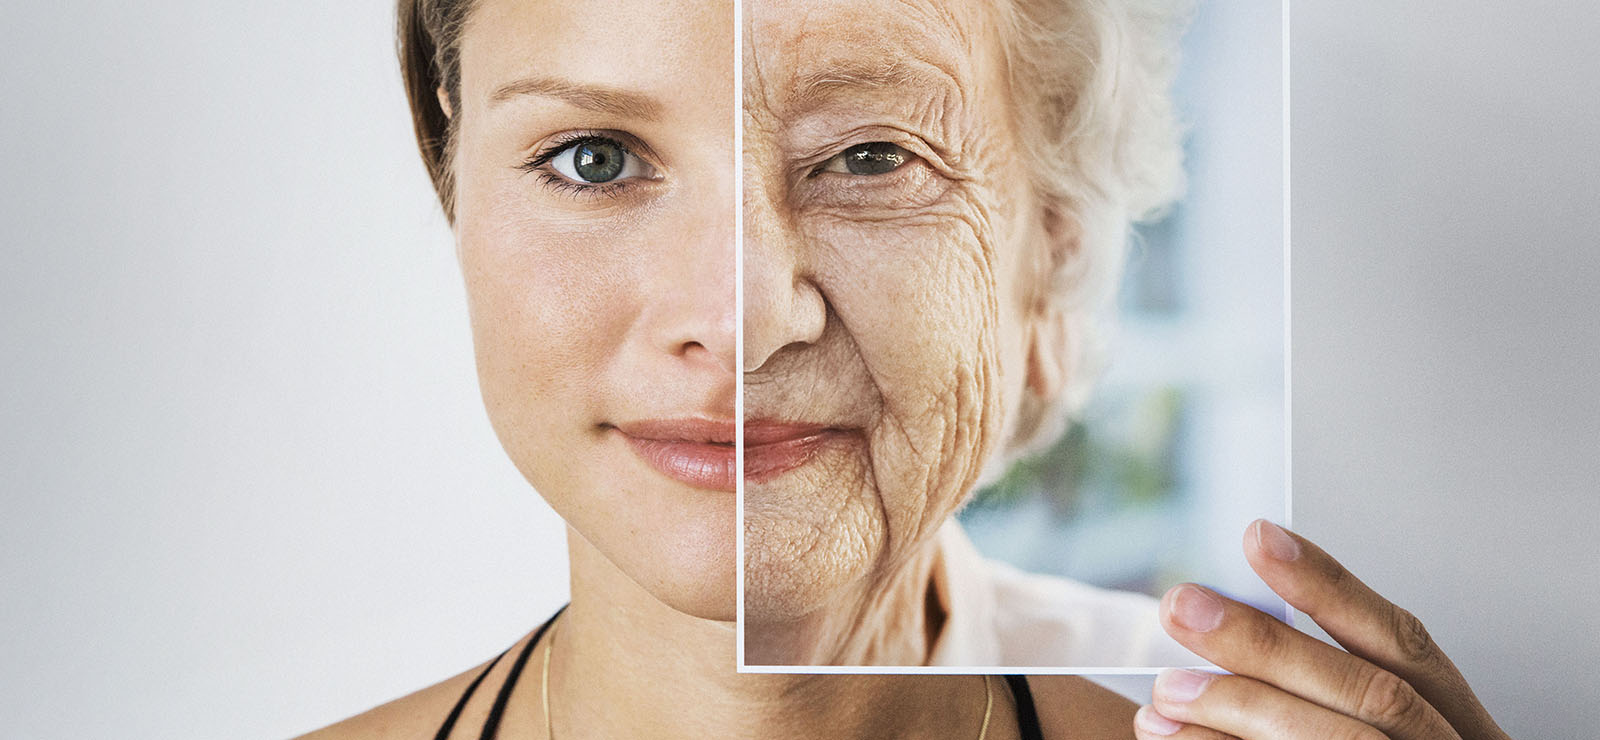 Lão hóa sớm đang ngày càng phổ biến và các bí kíp ngăn ngừa hiệu quả-1